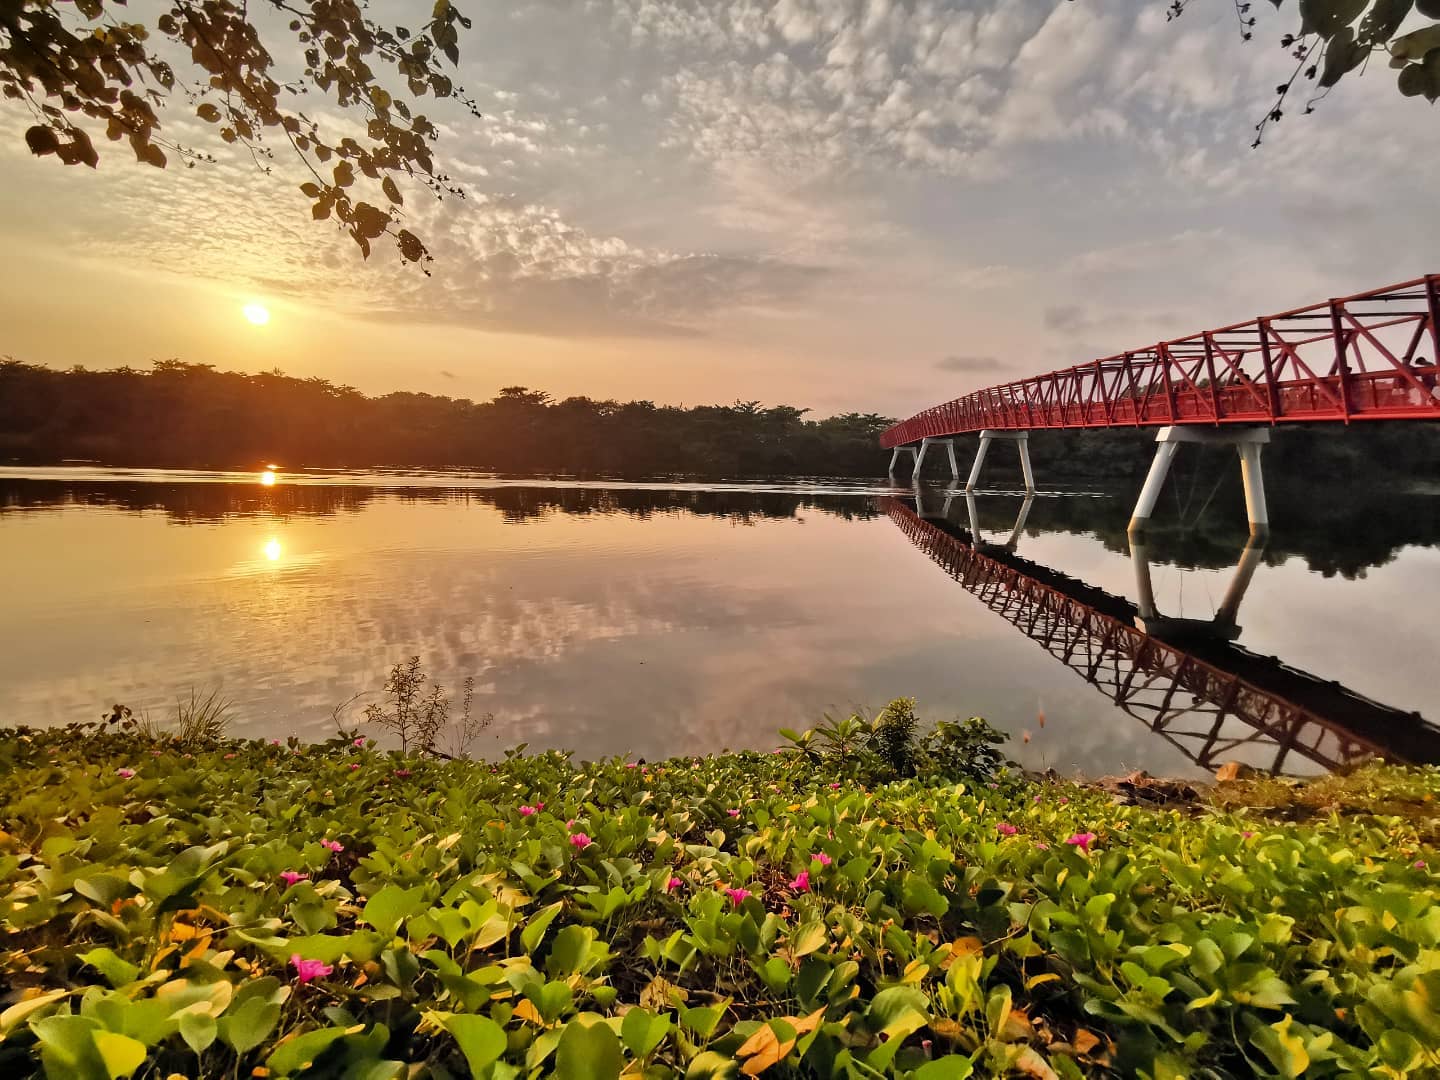 Sunrise & sunset spots in Singapore - Lorong Halus Wetland sunrise